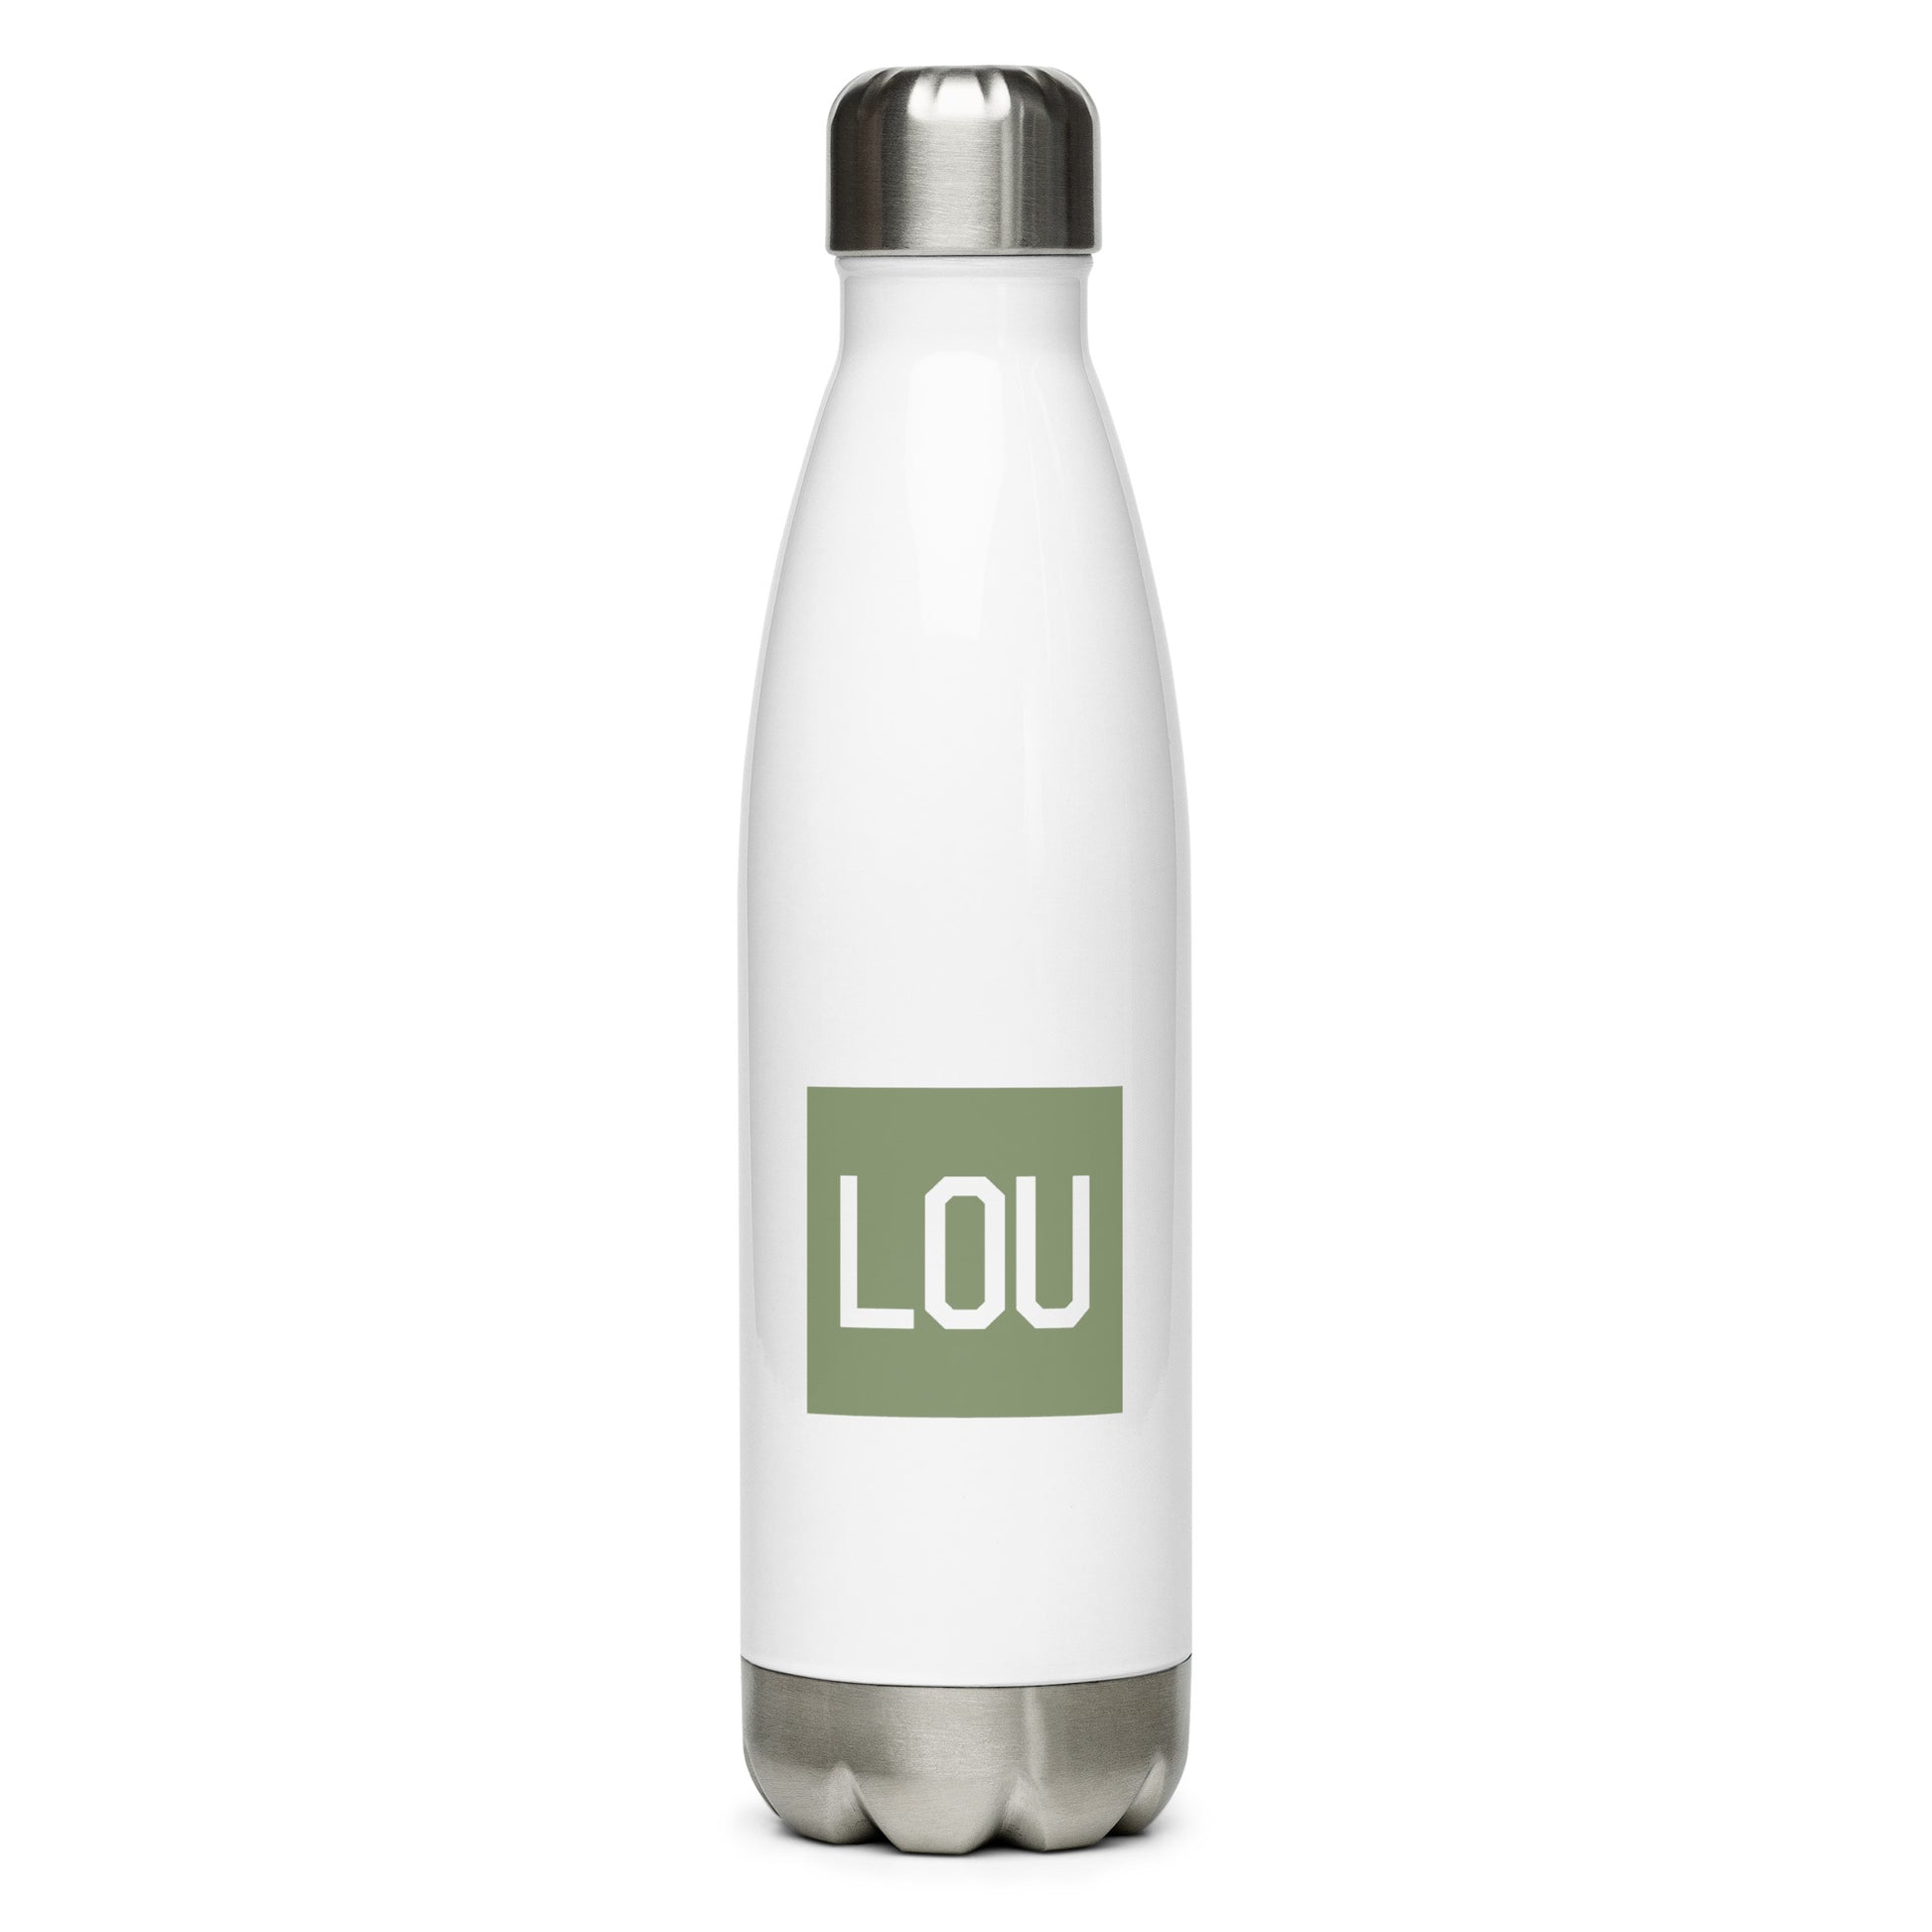 LOU Louisville Kentucky Stainless Steel Water Bottle